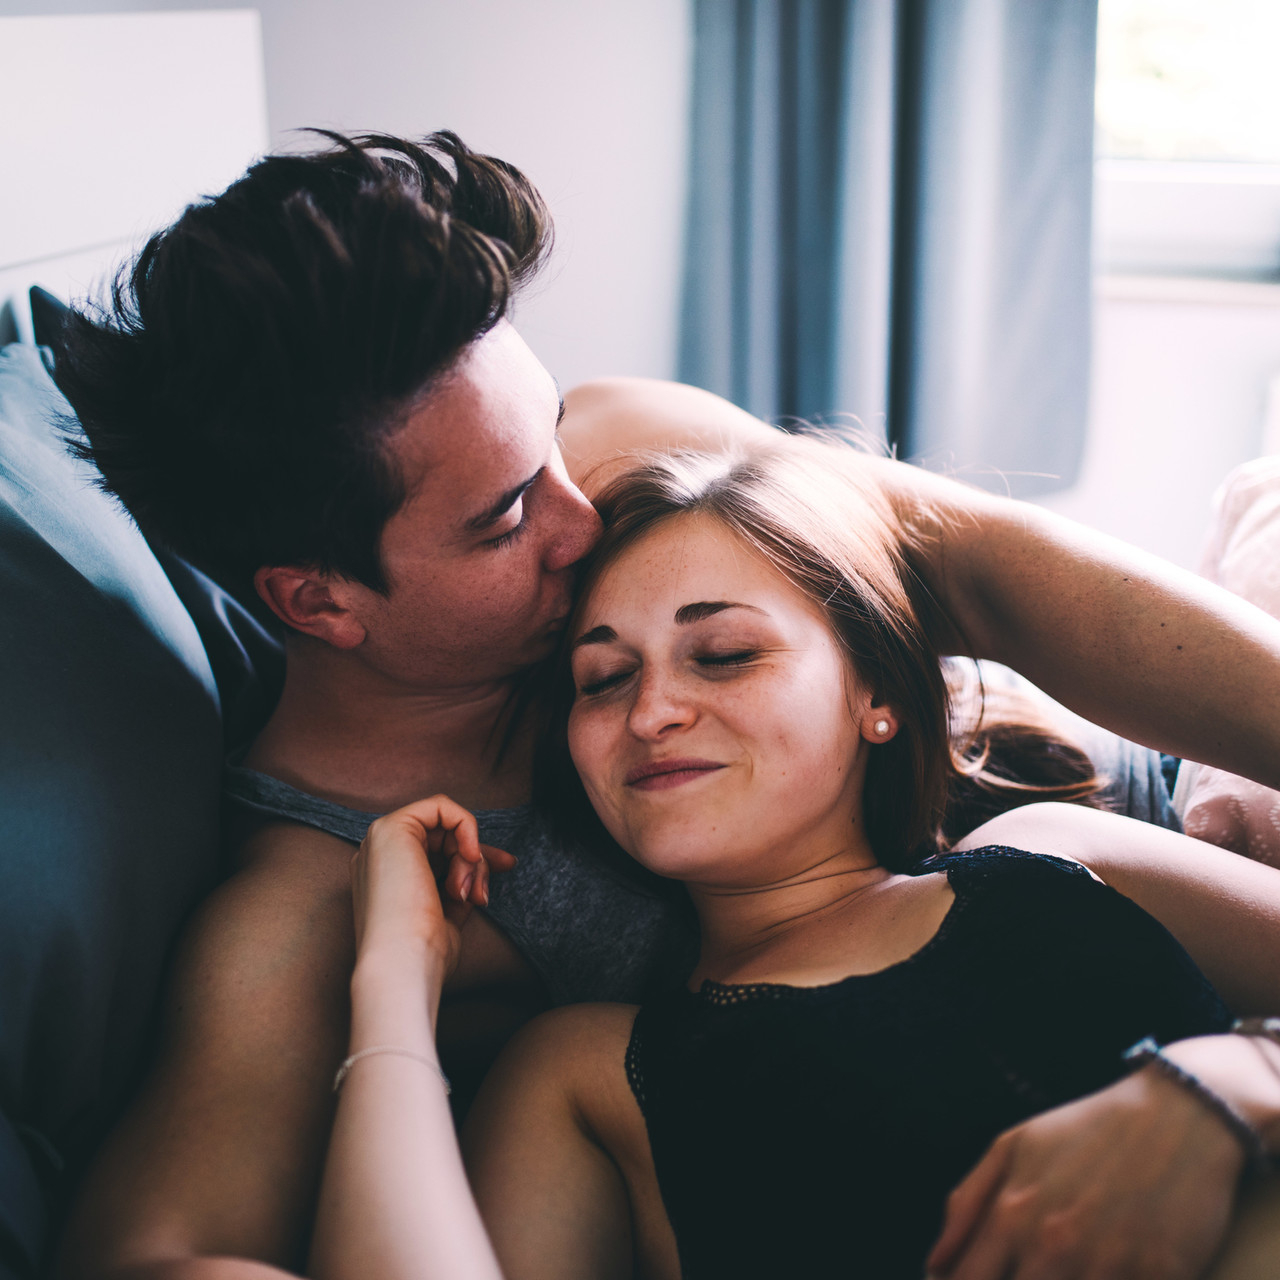 Секс после долгого перерыва: 10 советов мужчинам и женщинам как победить свои страхи